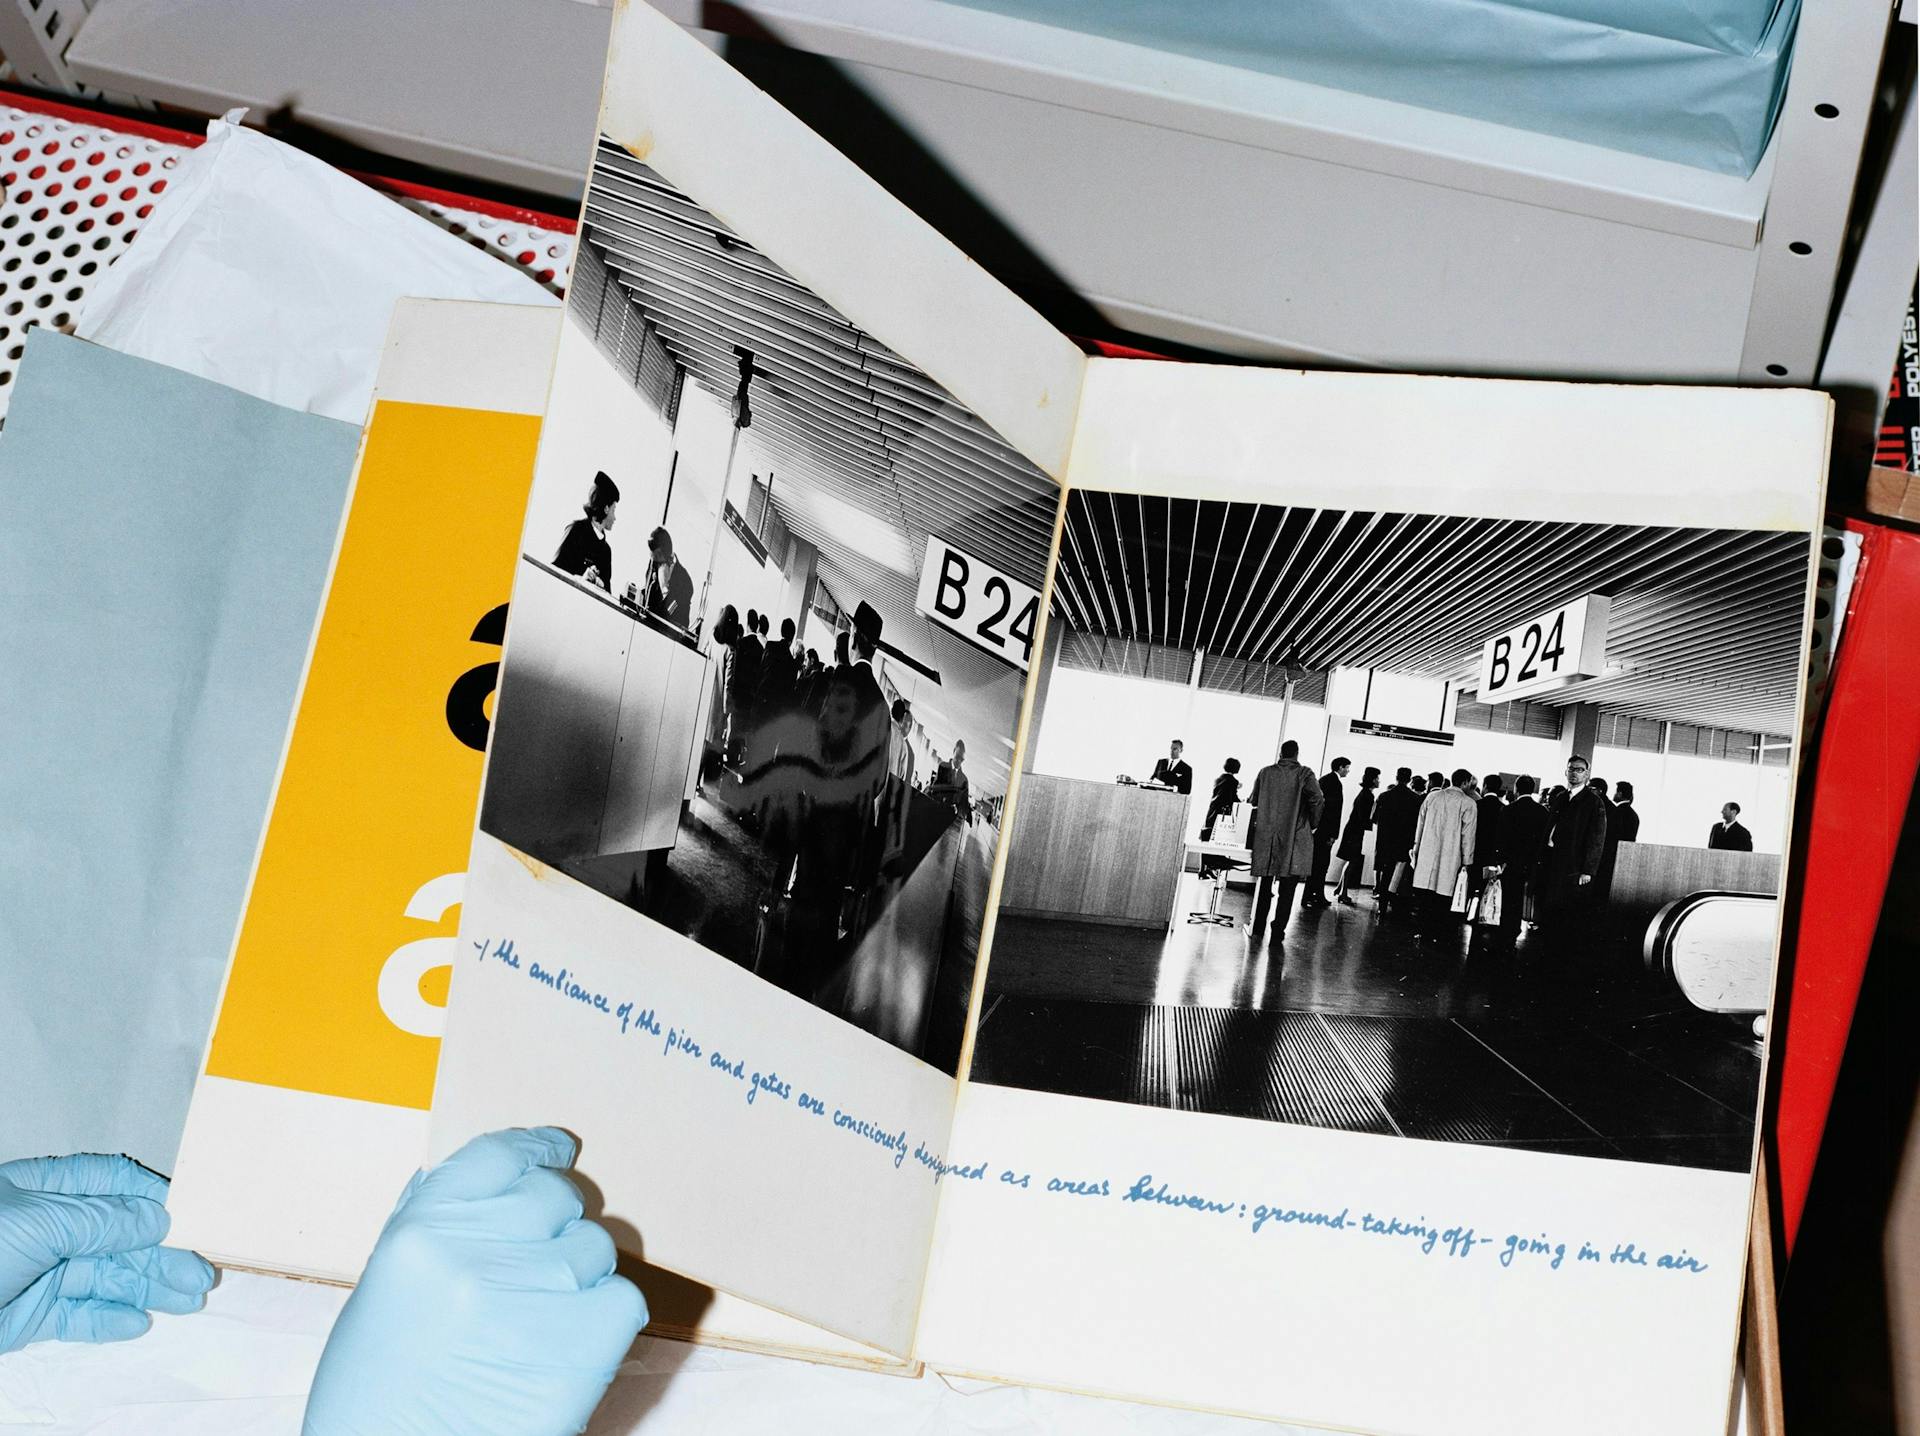 Kho Liang Ie, “Schipholboek,” in hout gebonden presentatieboek met foto’s, ontwerpstudies, aanwijzingen en handgeschreven notities over het interieur van Luchthaven Schiphol, oorspronkelijk vervaardigd voor een UNESCO-presentatie. Archief… 